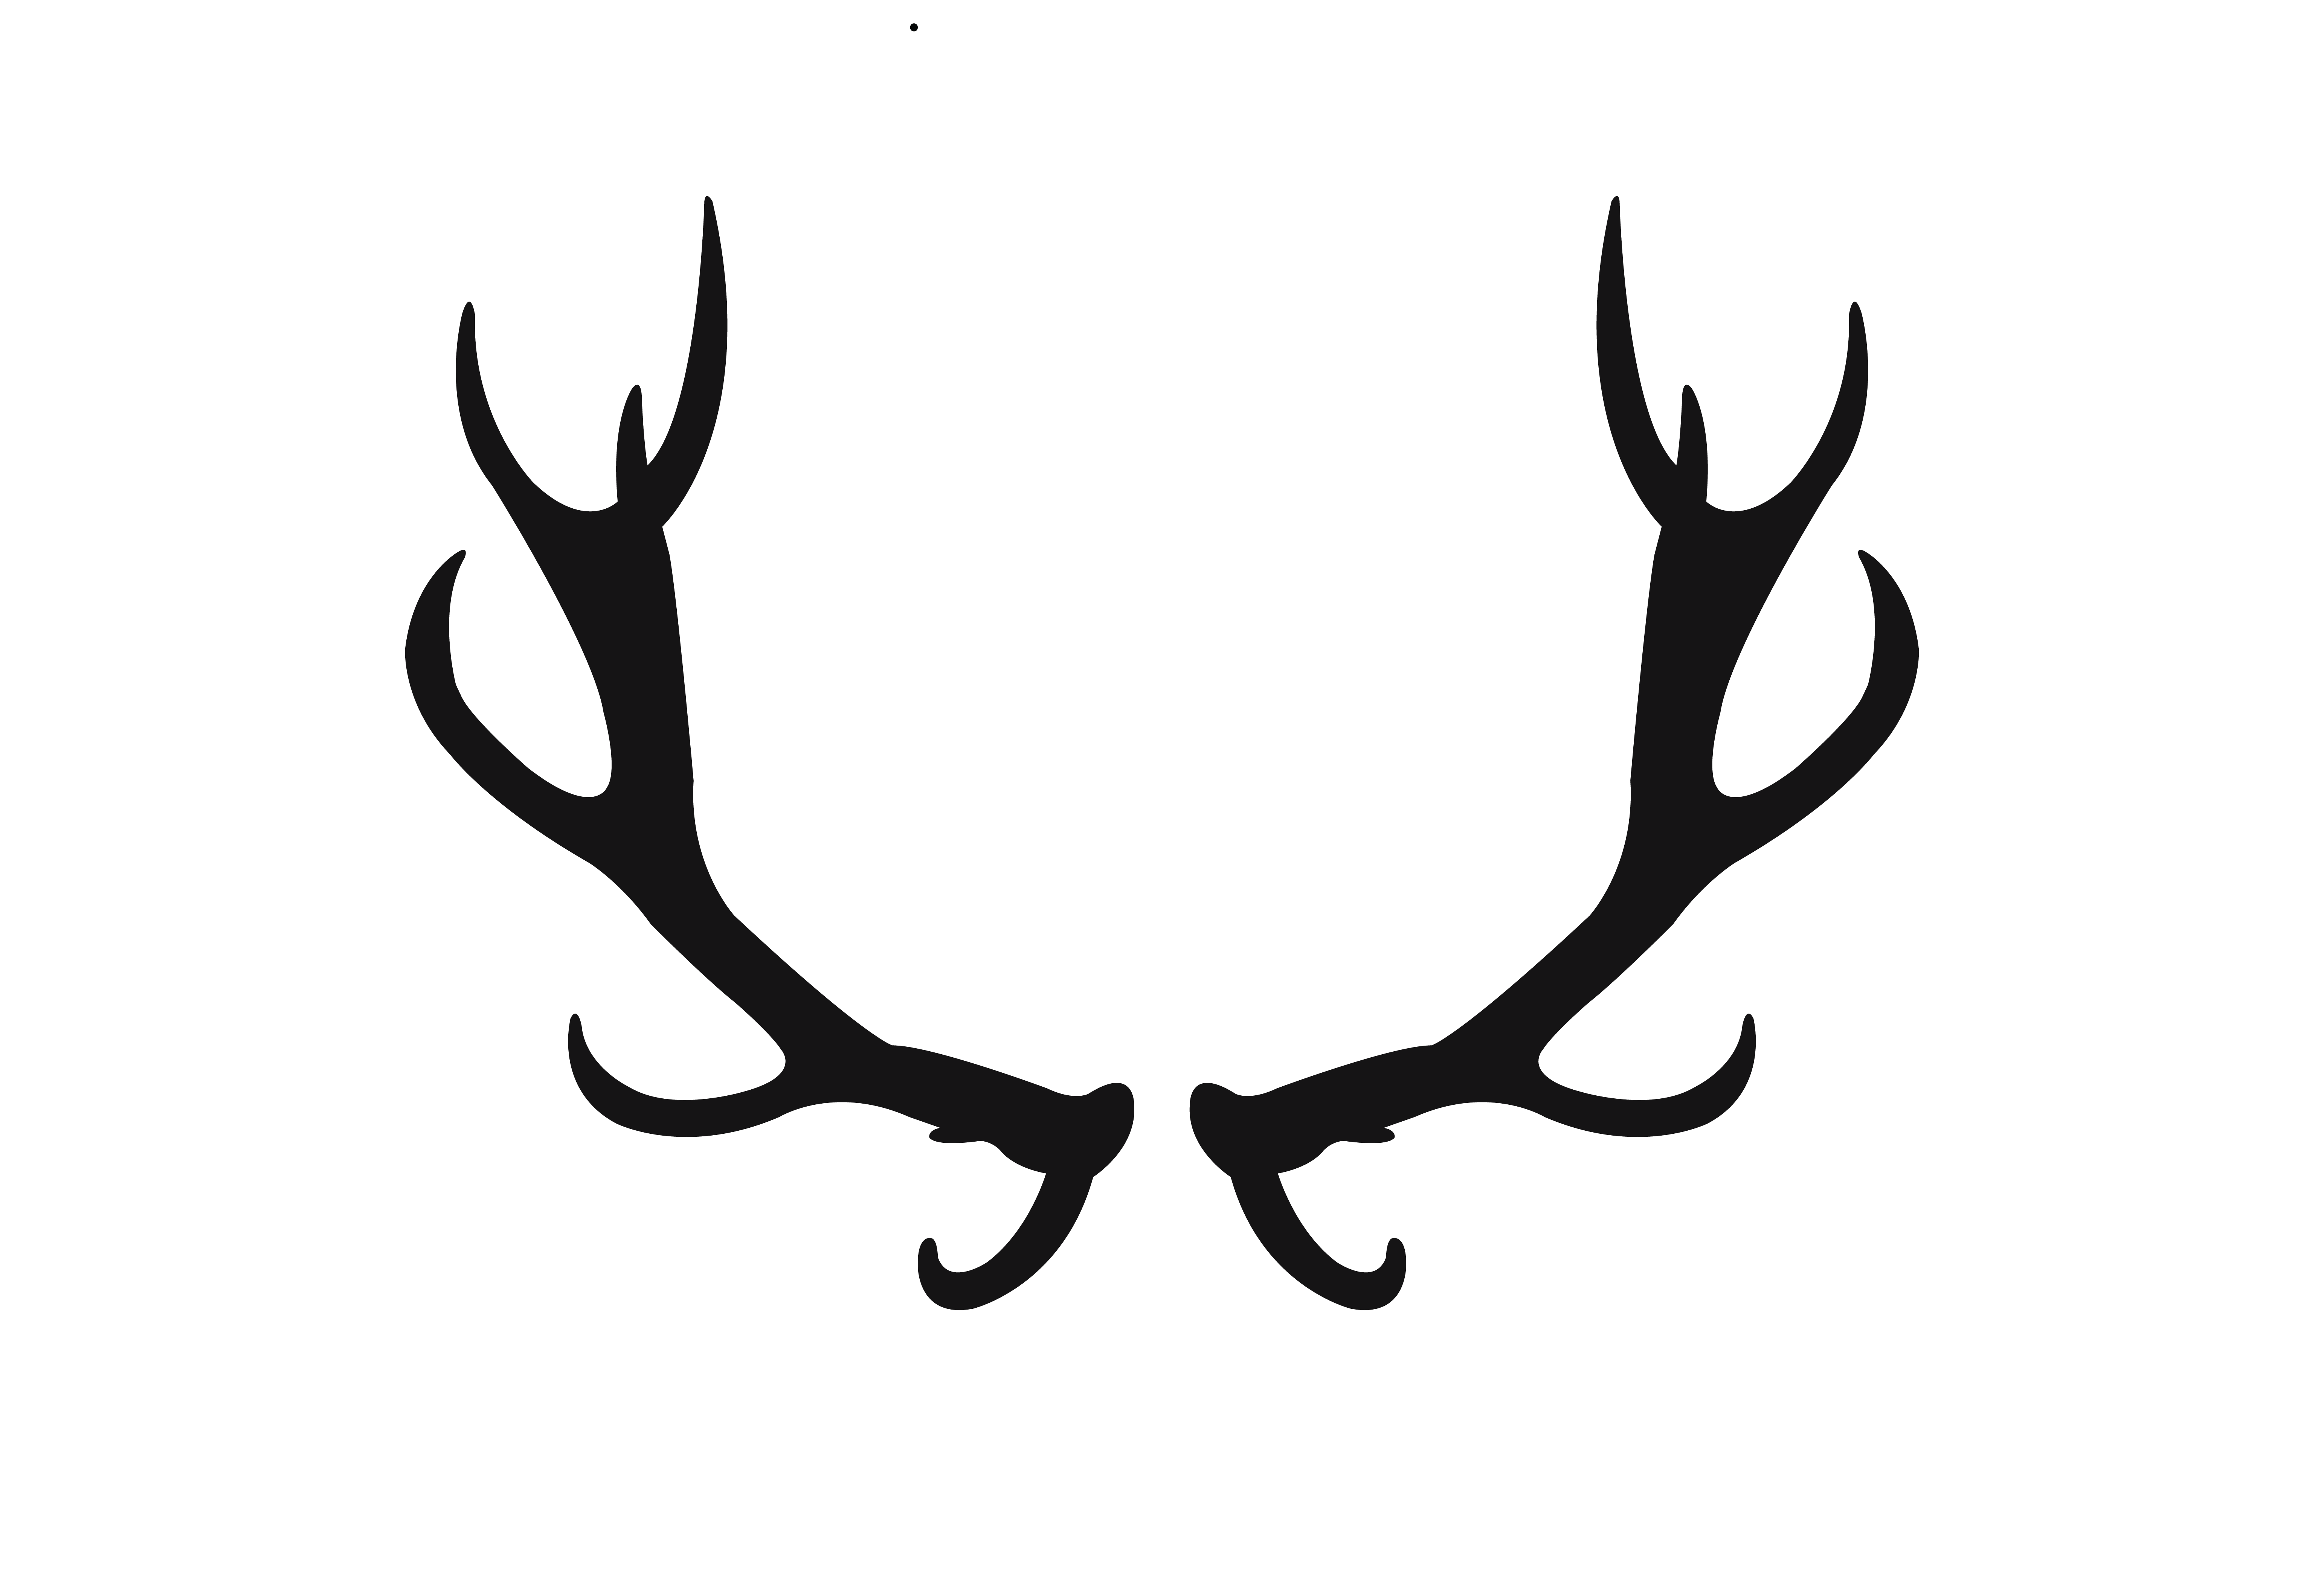 silhouette of deer antlers